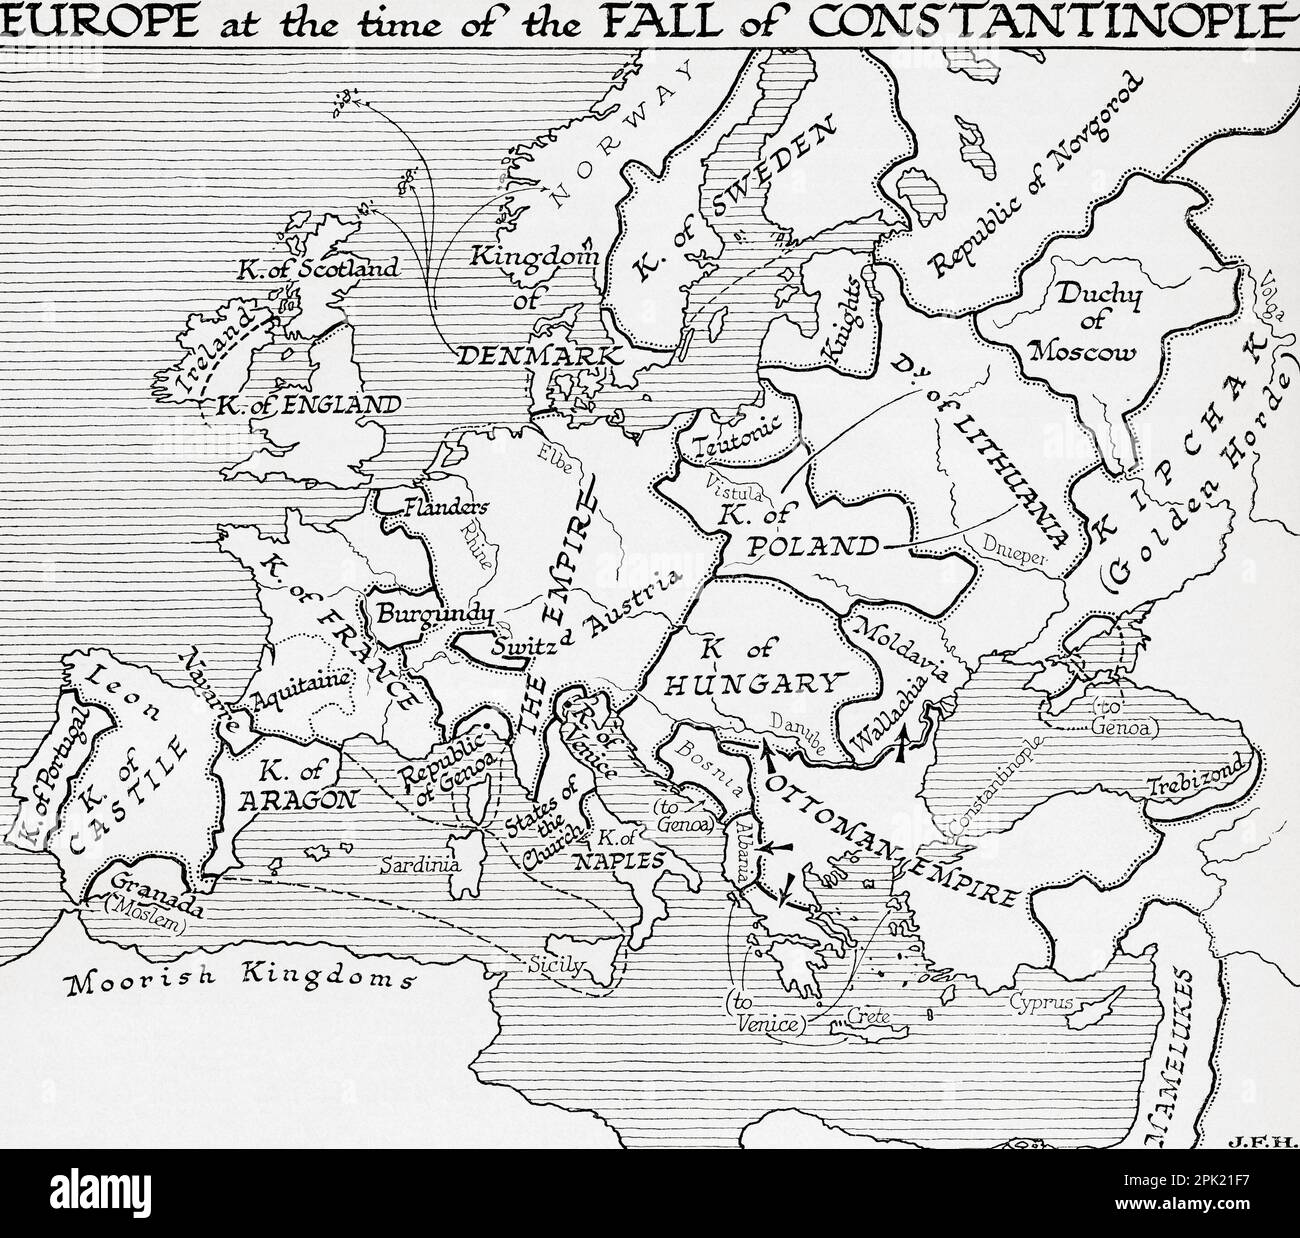 Karte von Europa zur Zeit des Konstantinopelsturzes, 15. Jahrhundert. Aus dem Buch Outline of History von H.G. Wells, veröffentlicht 1920. Stockfoto